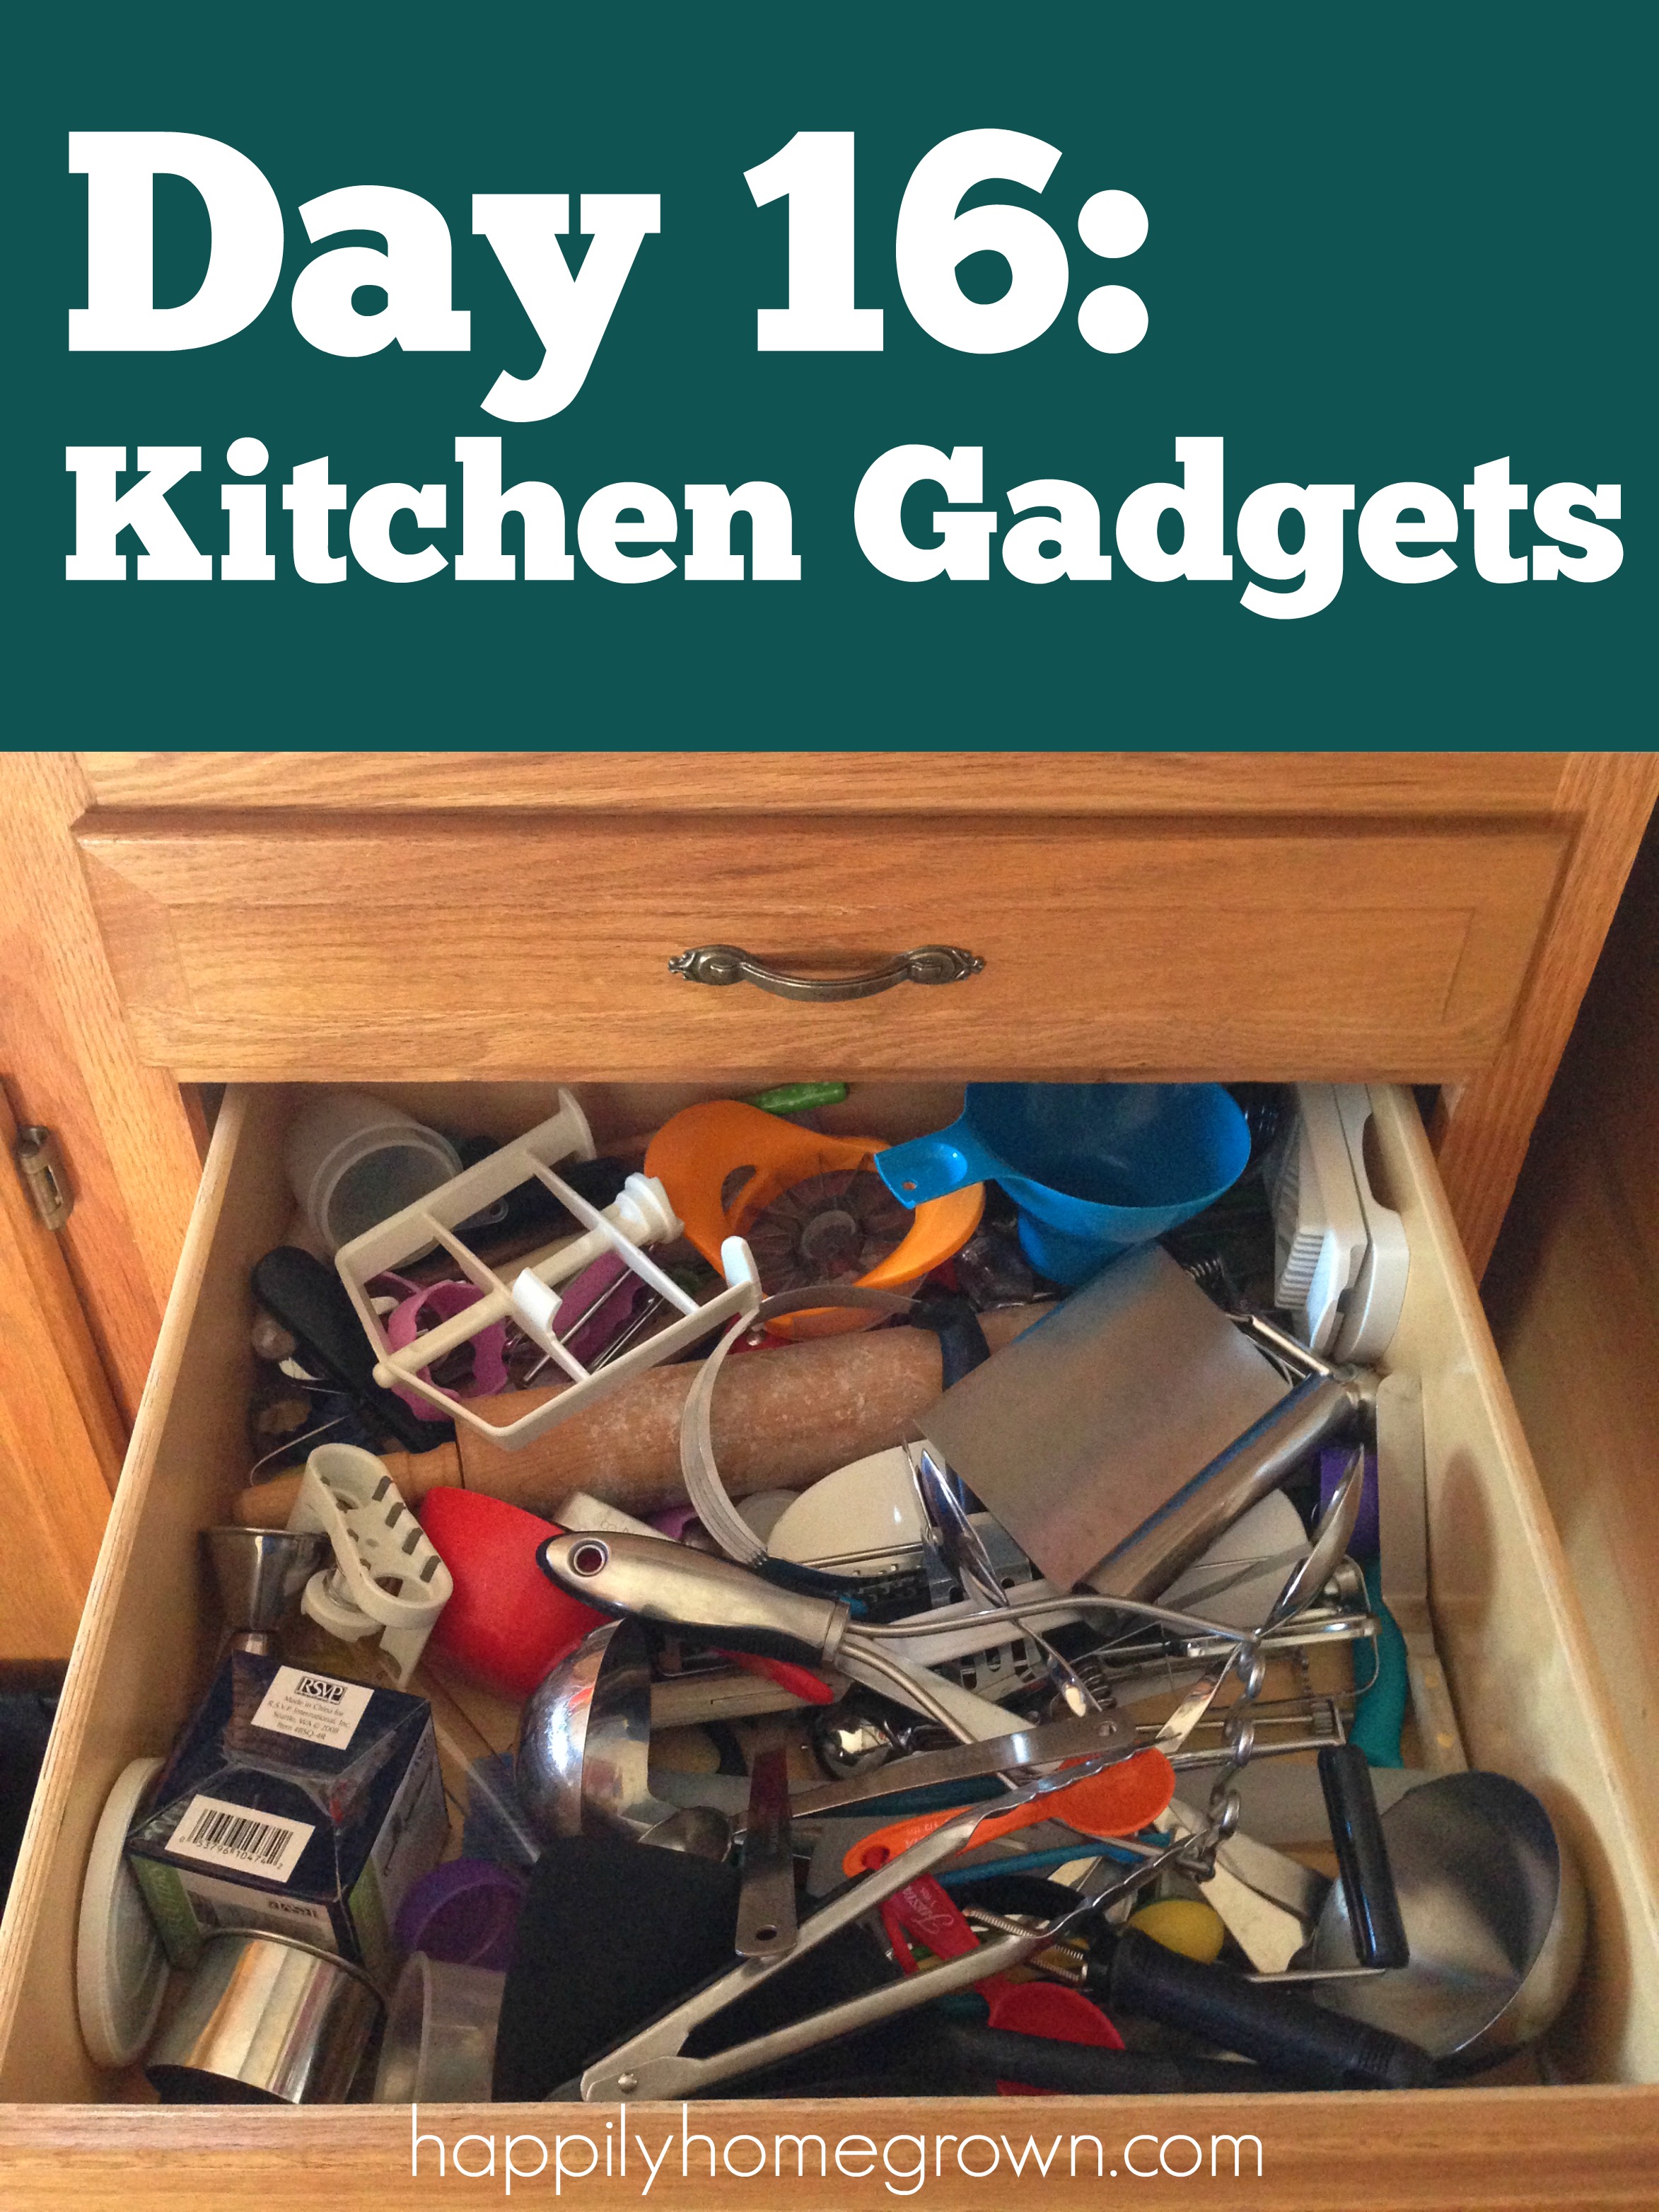 Day 16 Kitchen Gadgets